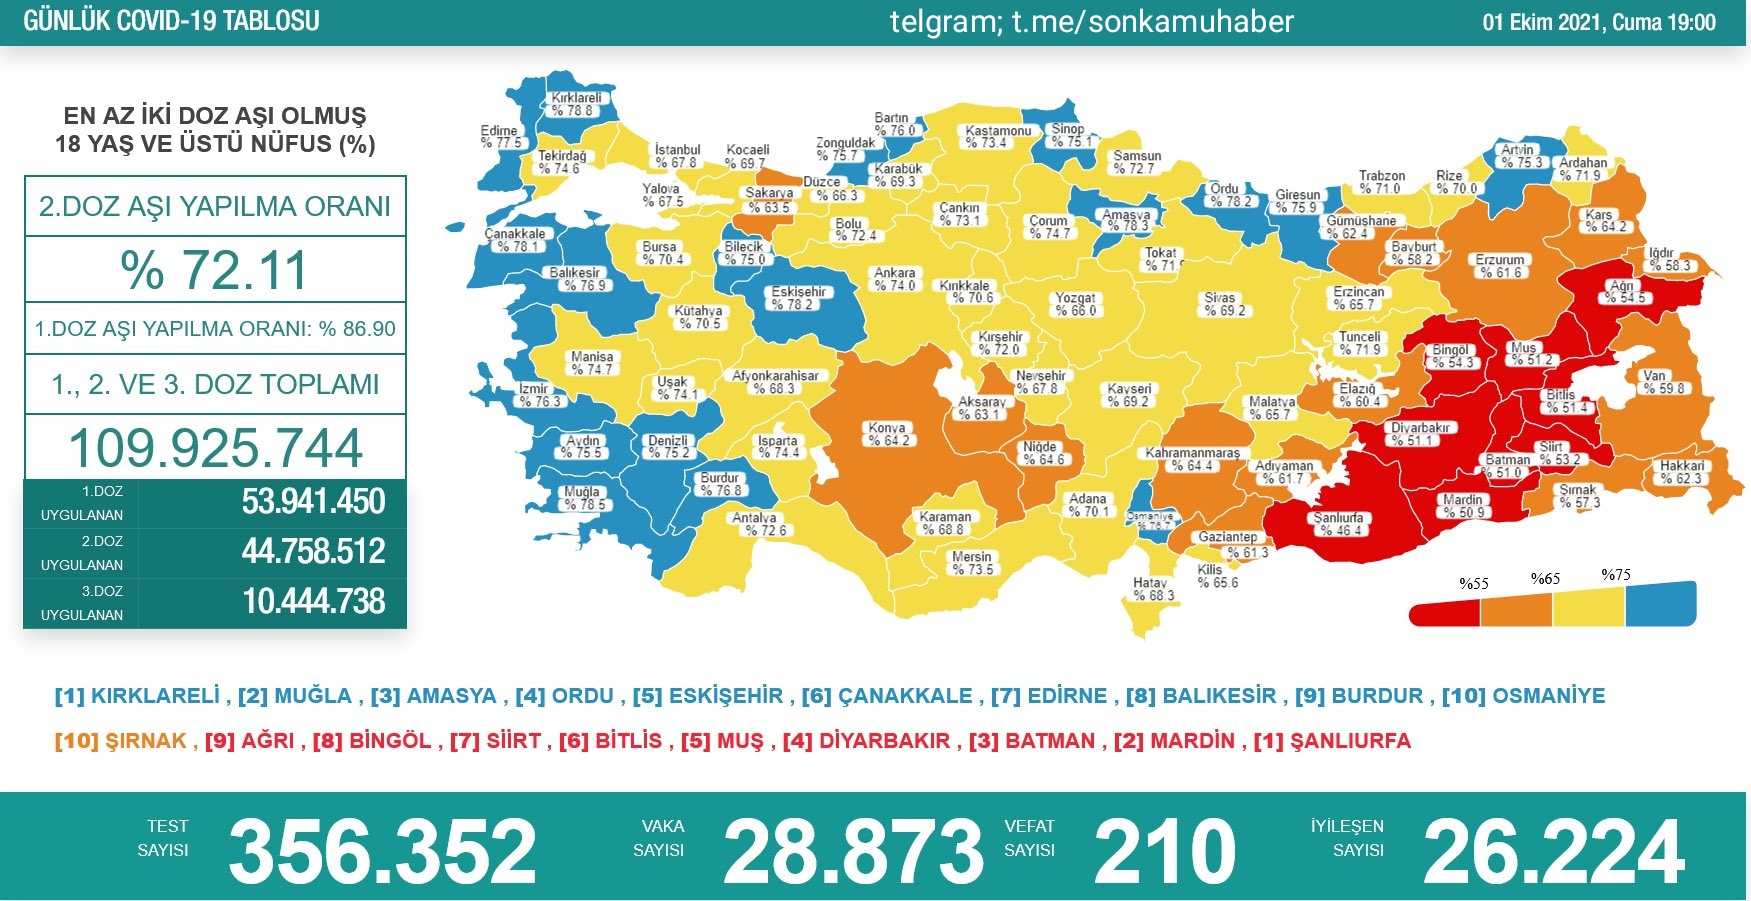 Sağlık Bakanlığı 1 Ekim 2021 Türkiye Koronavirüs Tablosu Açıkladı